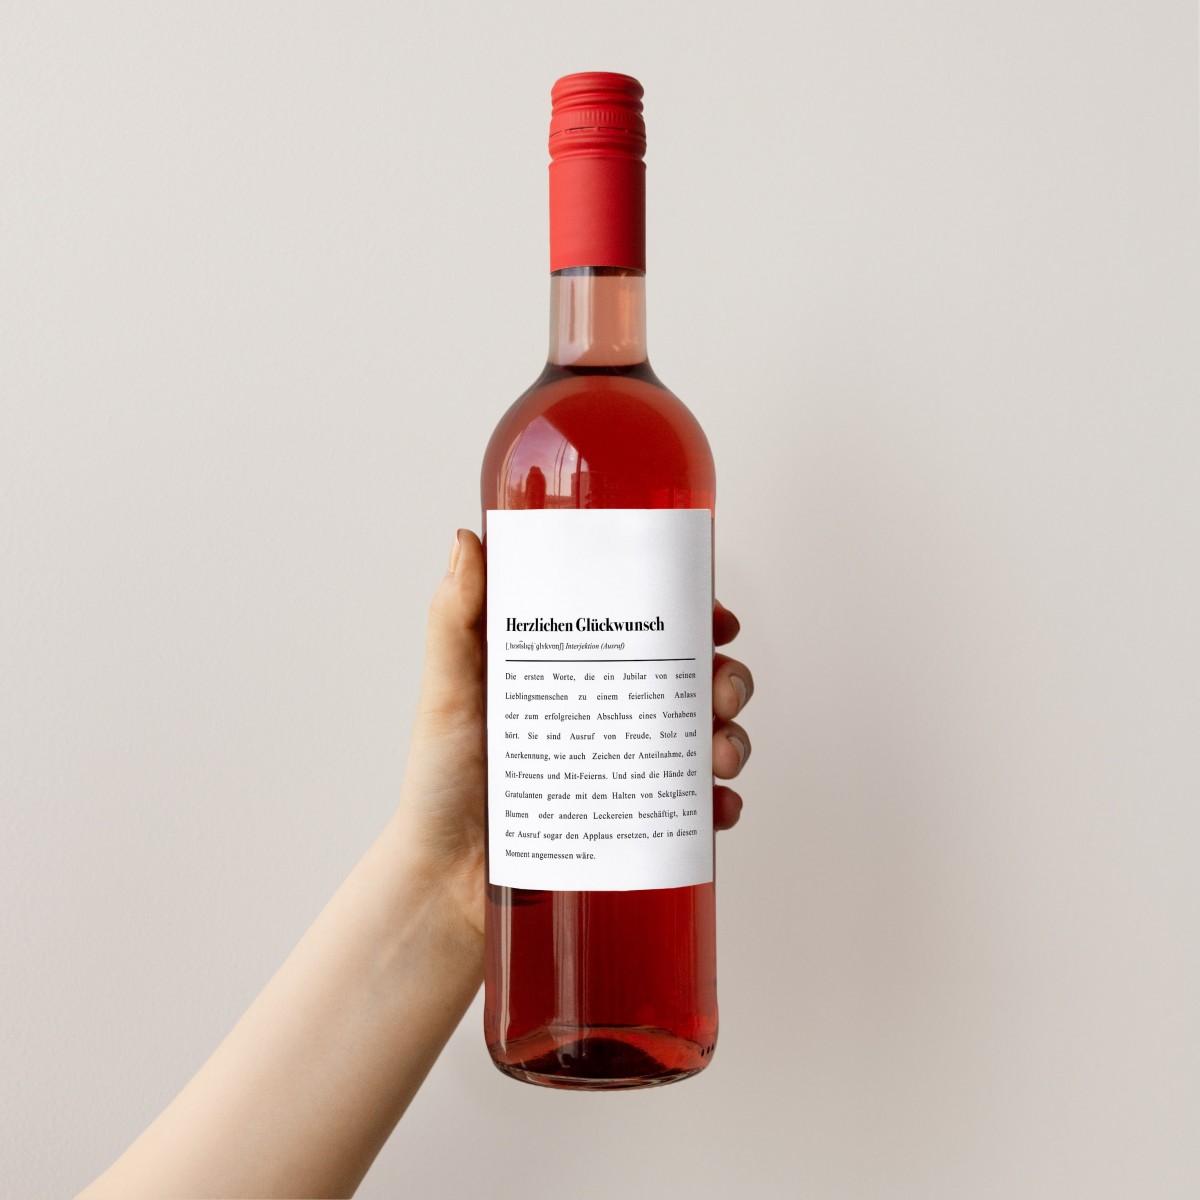 Etikett für Weinflaschen: "Herzlichen Glückwunsch" - Pulse of ArtDefinition